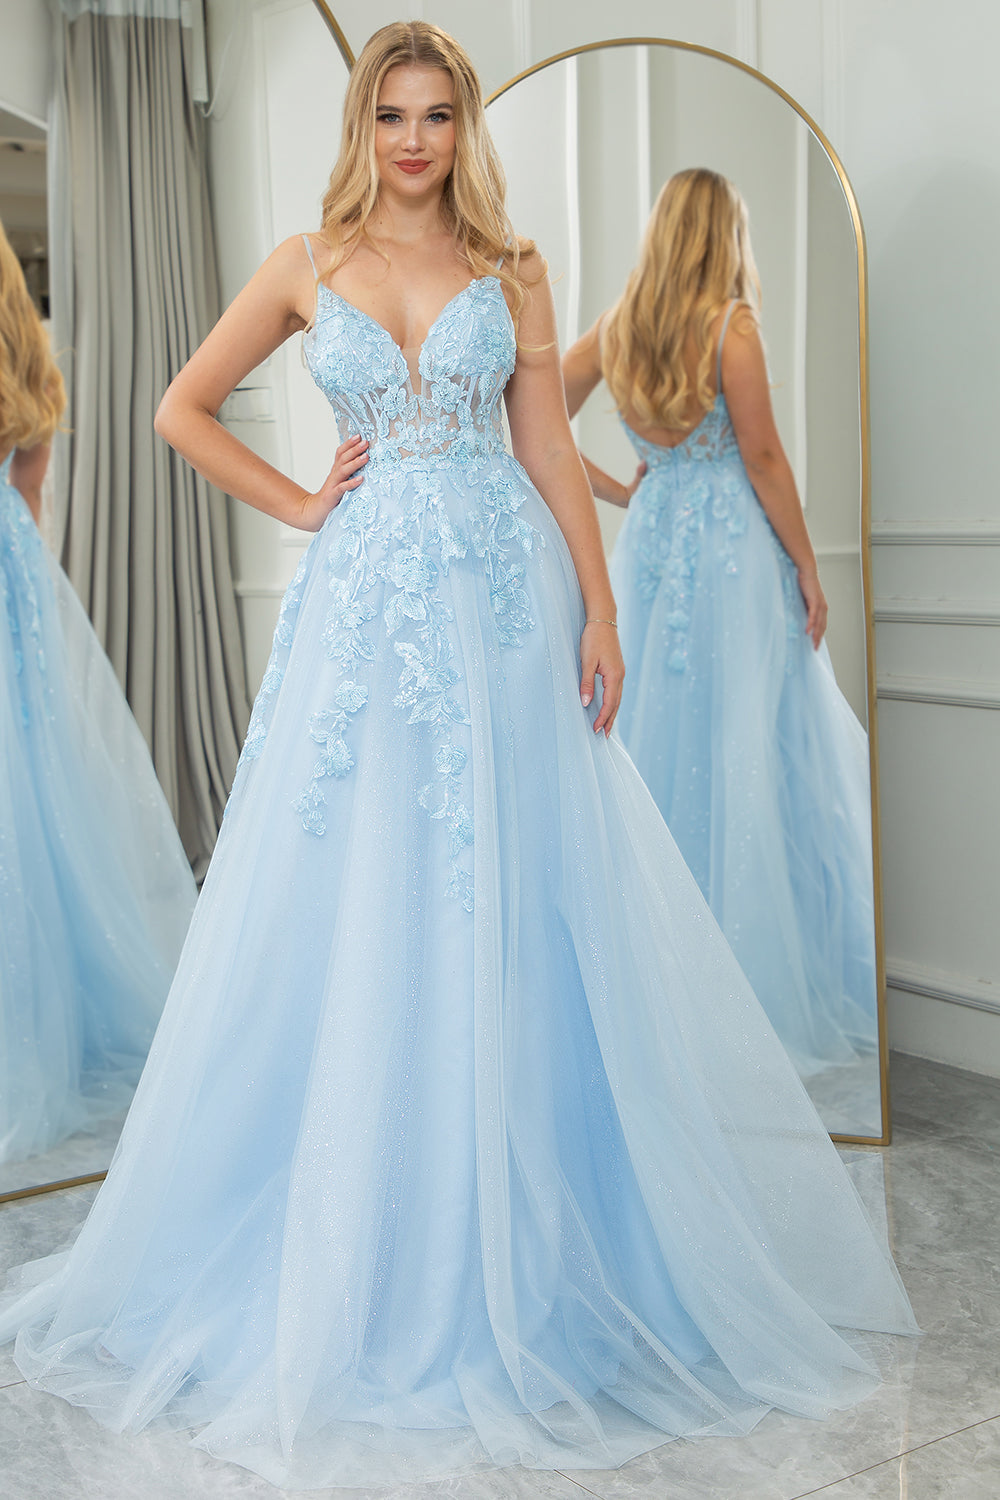 Angelsbridep Sky Blue A-line Lace Up Corset Prom Dresses Robes De